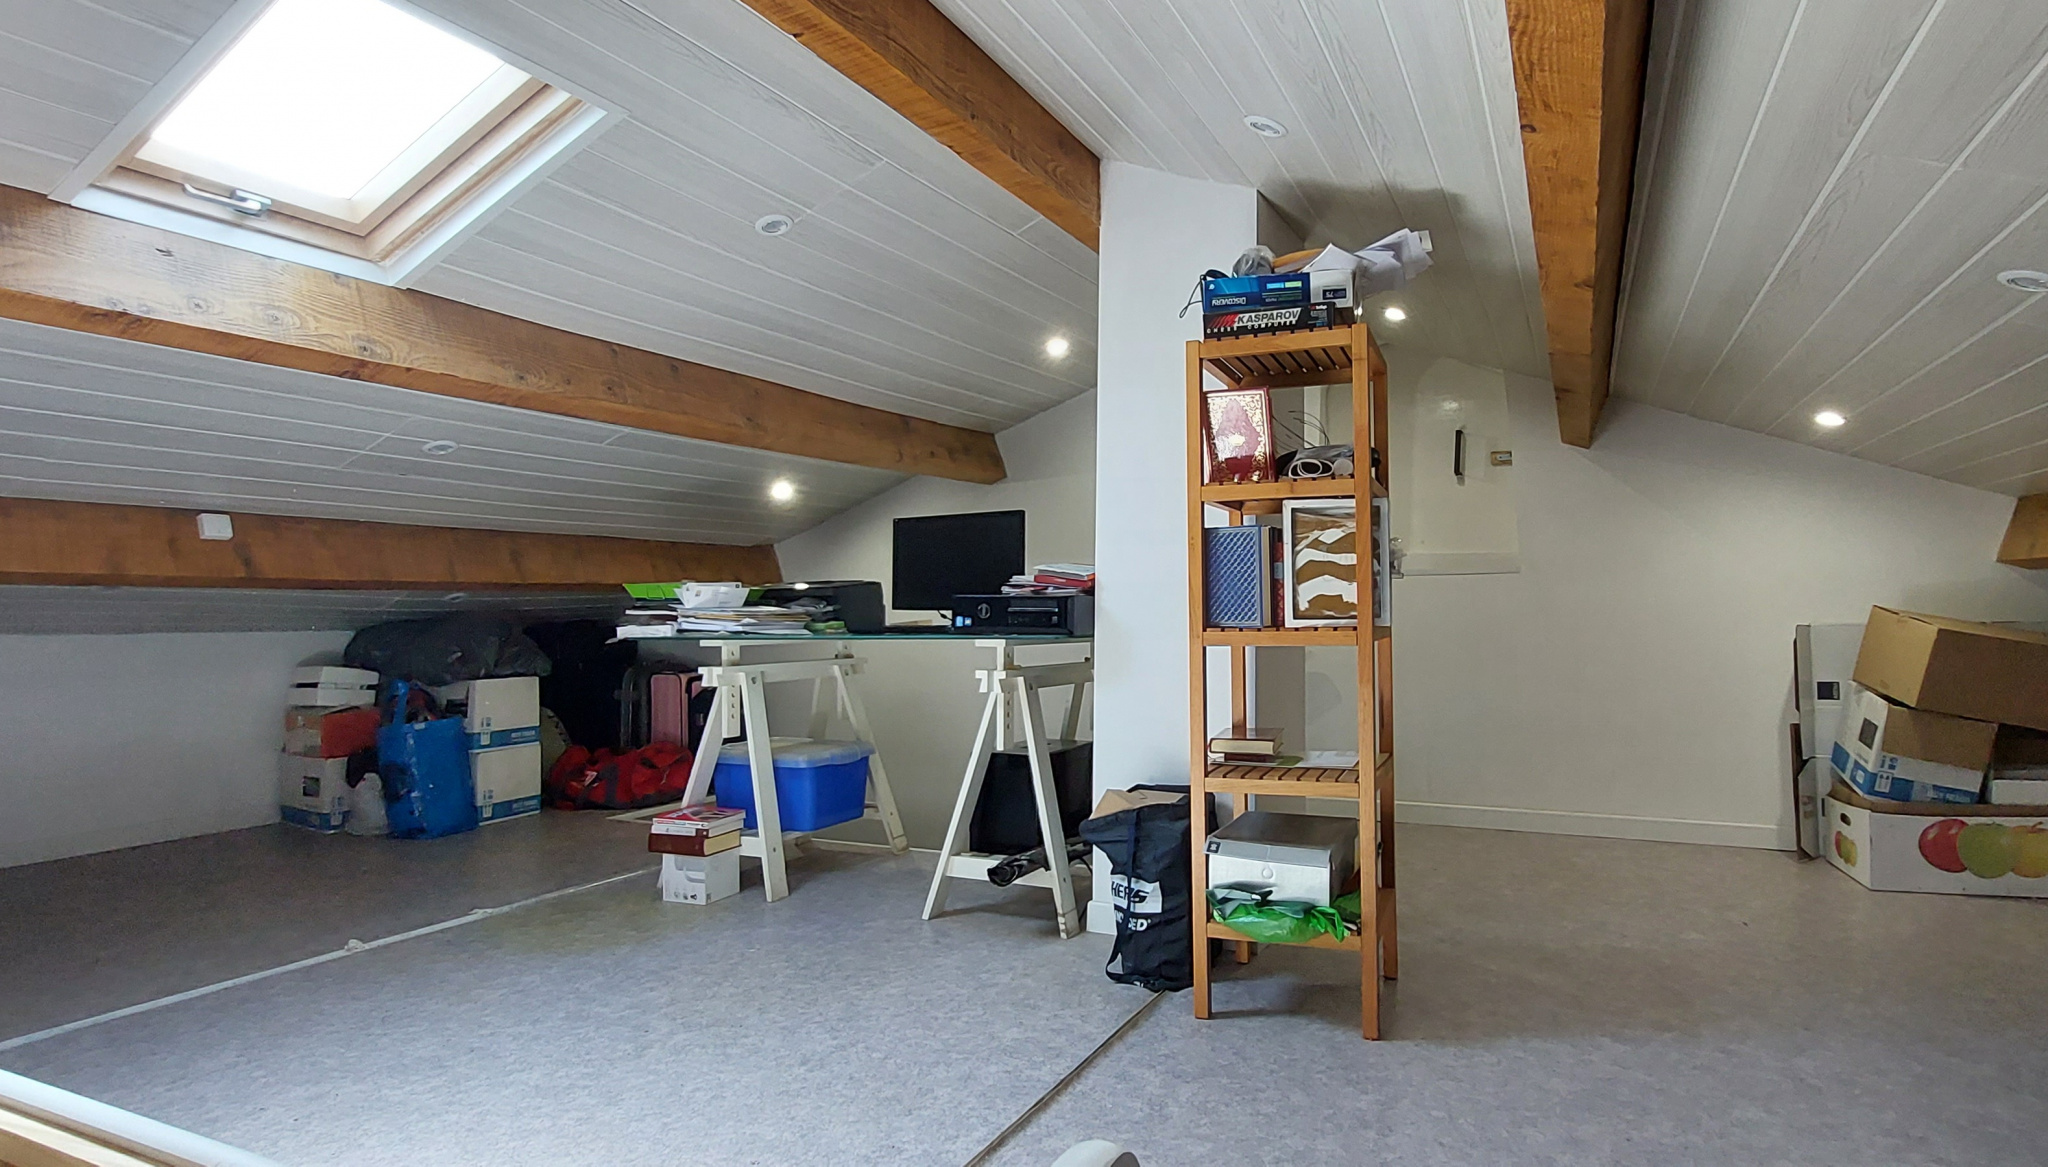 Bureau ou chambre au dessus du garage